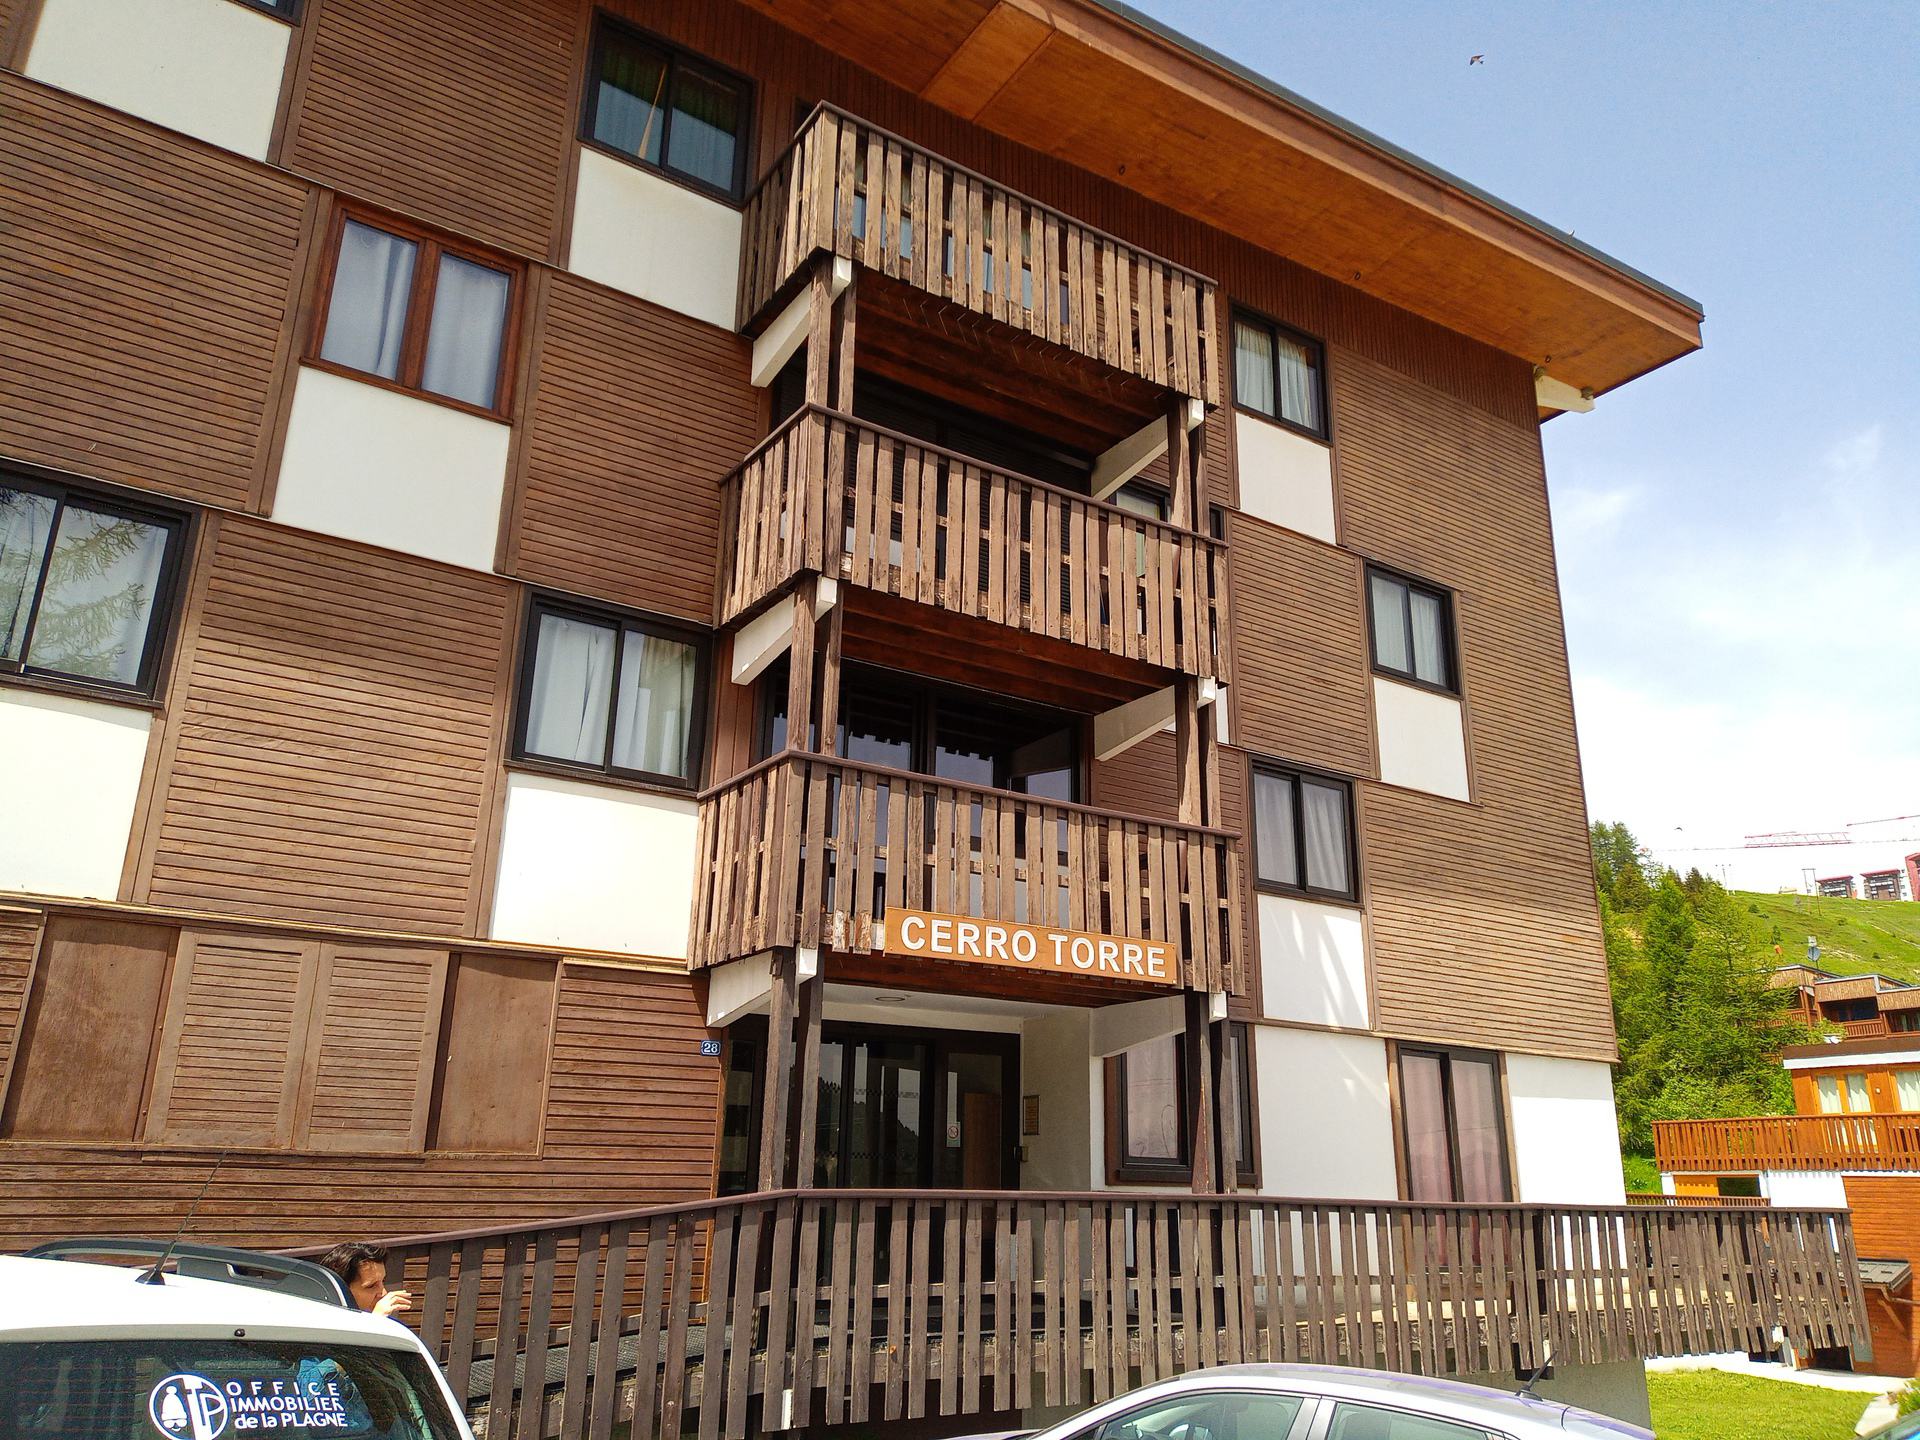 travelski home choice - Apartements CERRO TORRE - Plagne Centre